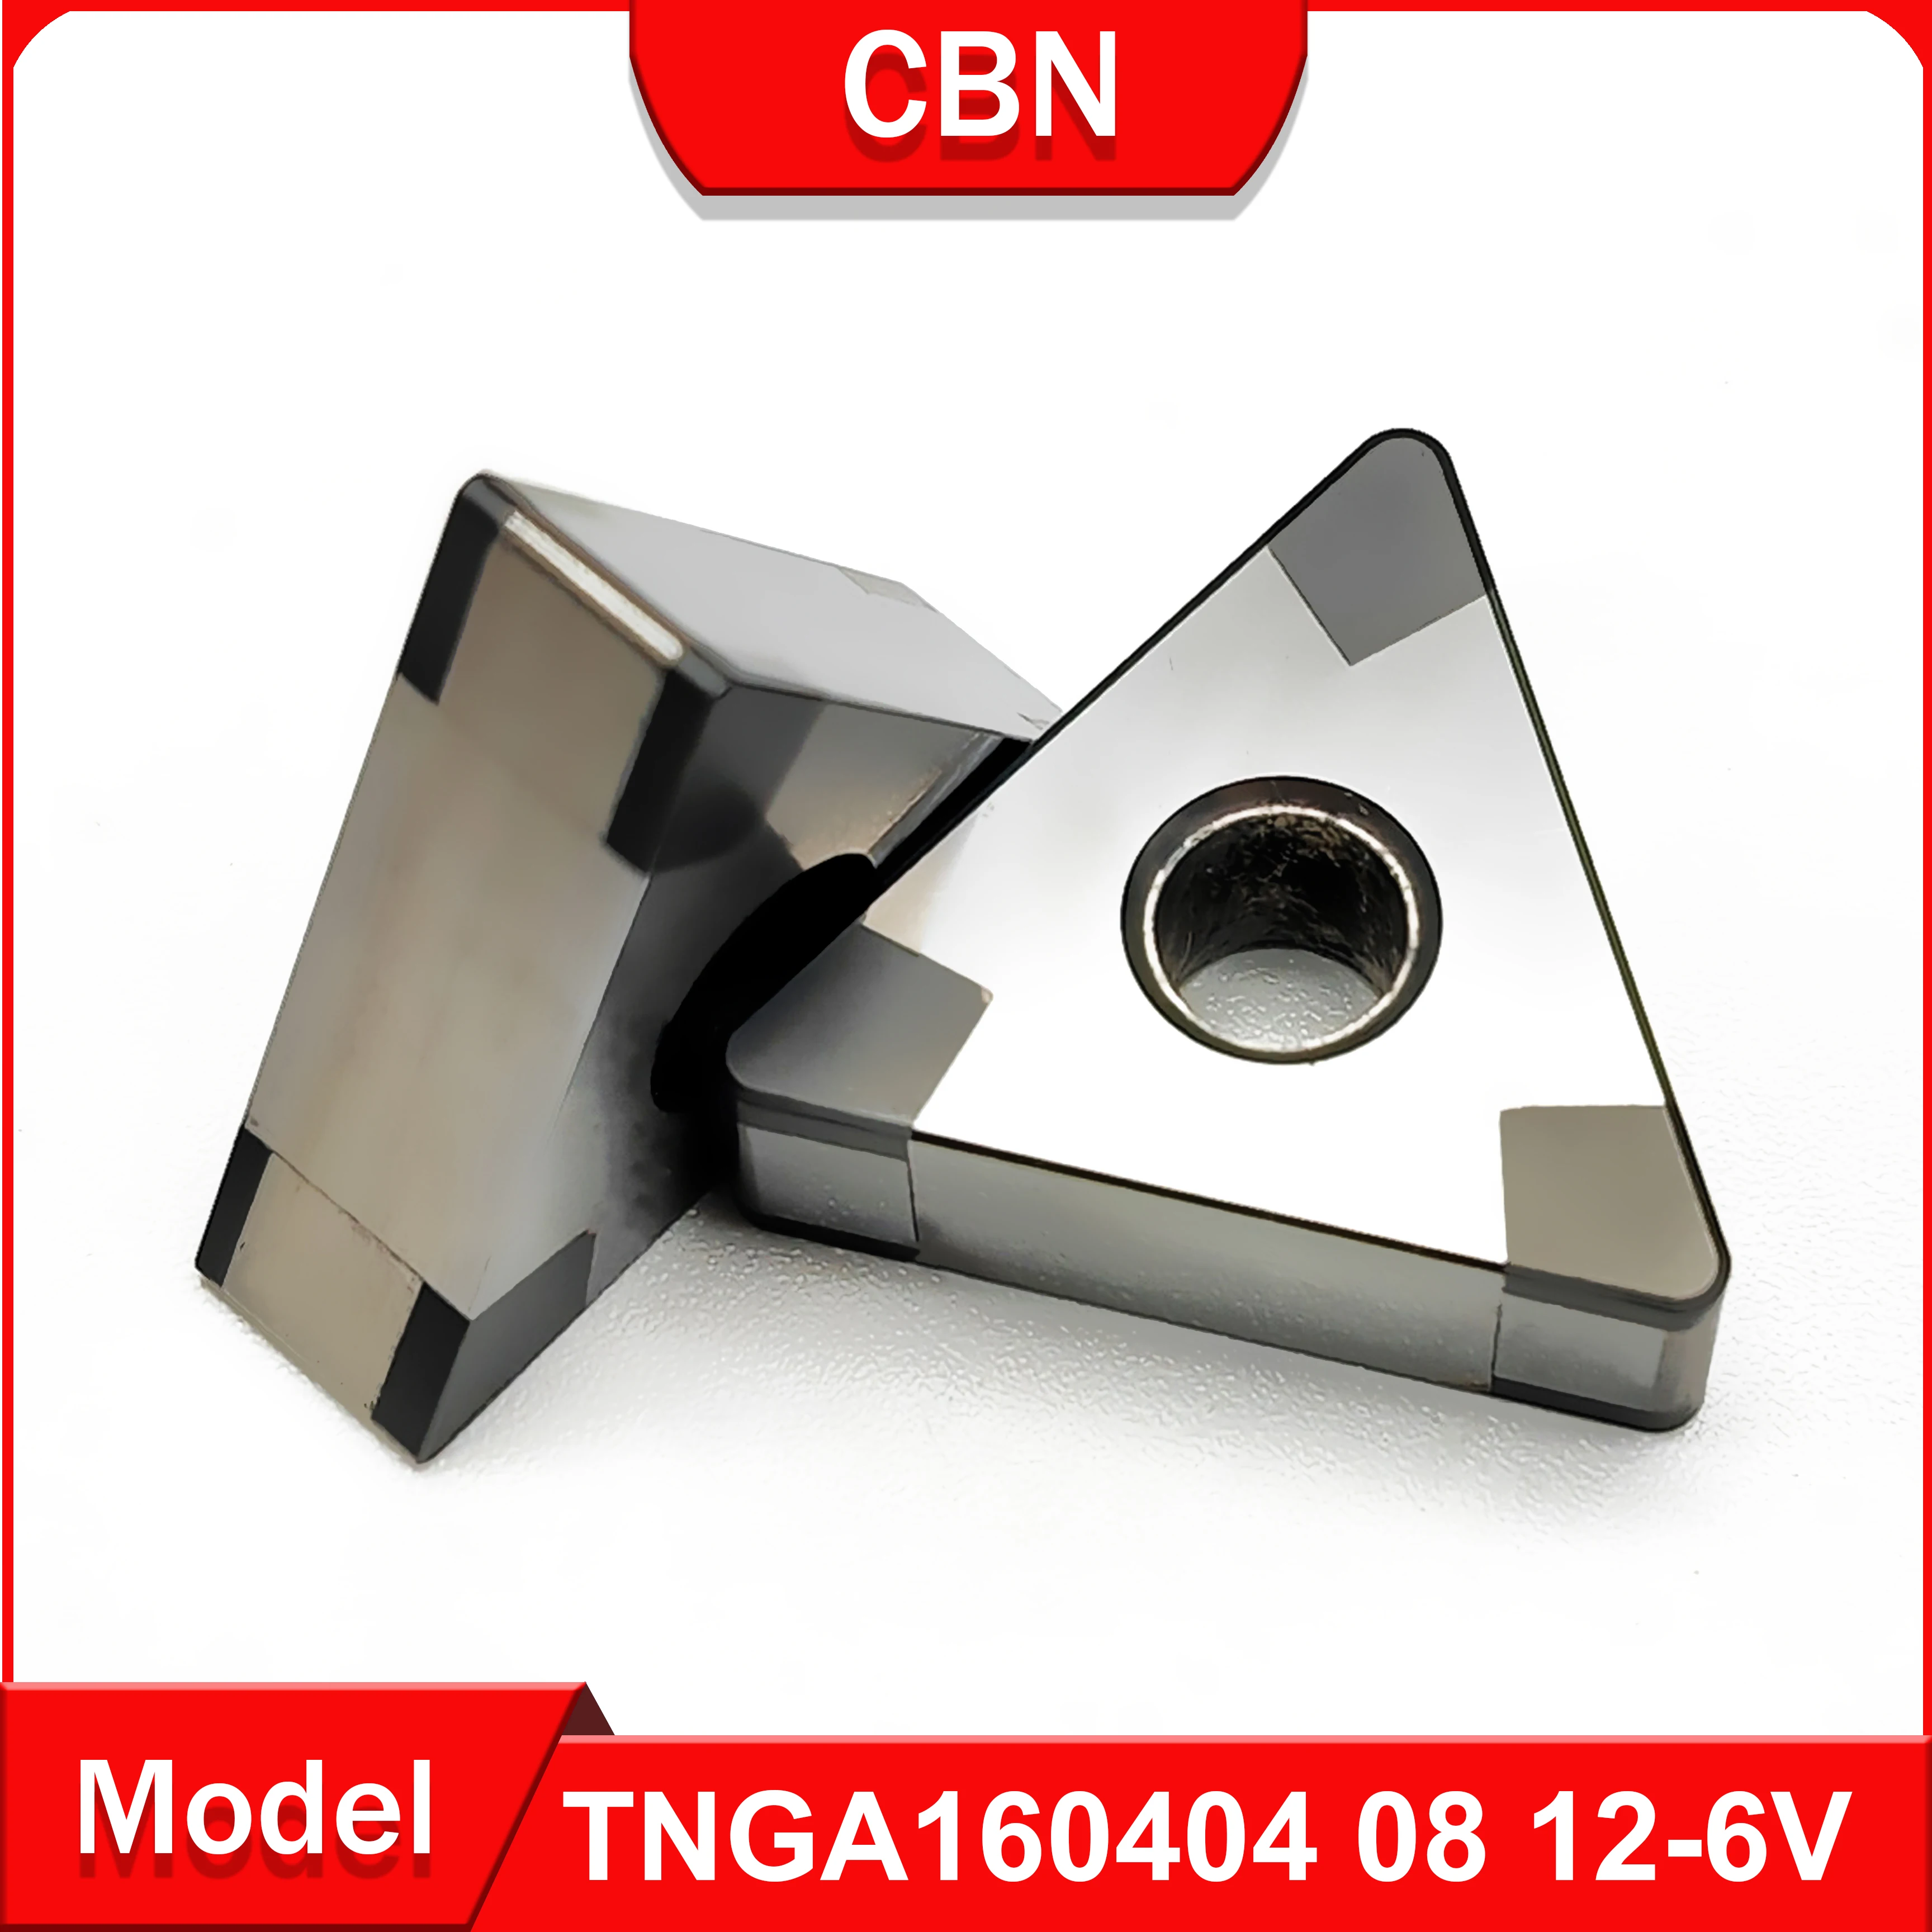 

CBN TNGA160404 TNGA160408 фотоинструмент обработки твердой стали и чугуна и других материалов высокой твердости 10 шт TNGA